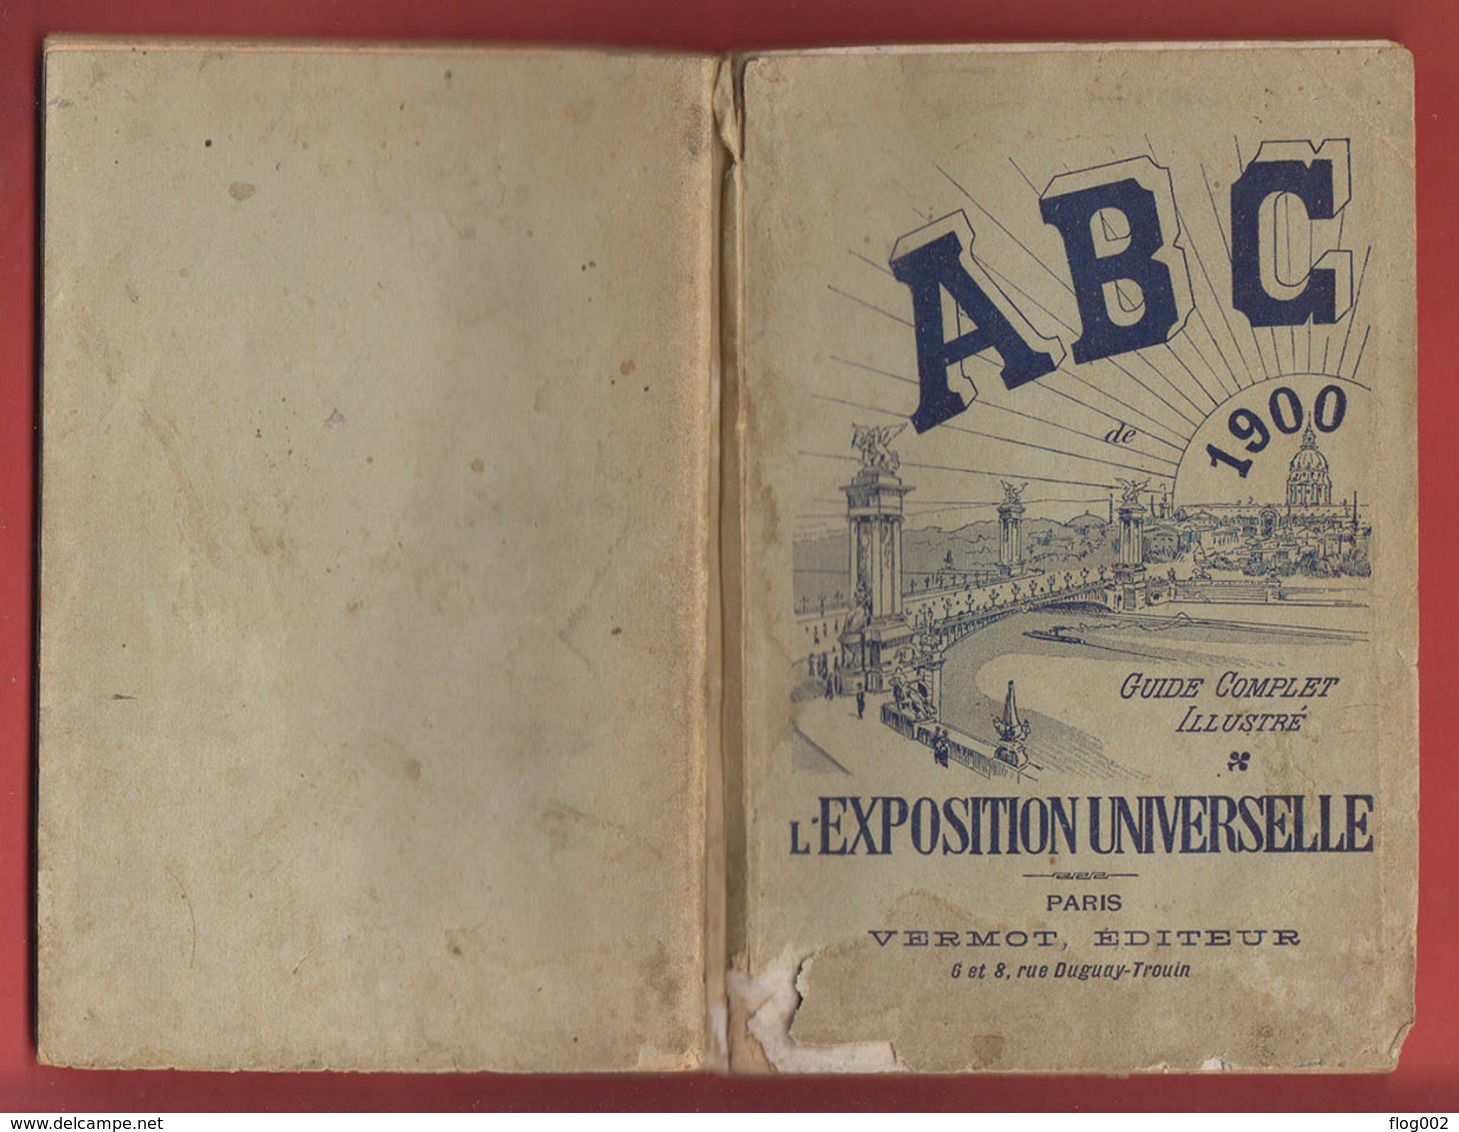 ABC de 1900 de l'Exposition Universelle